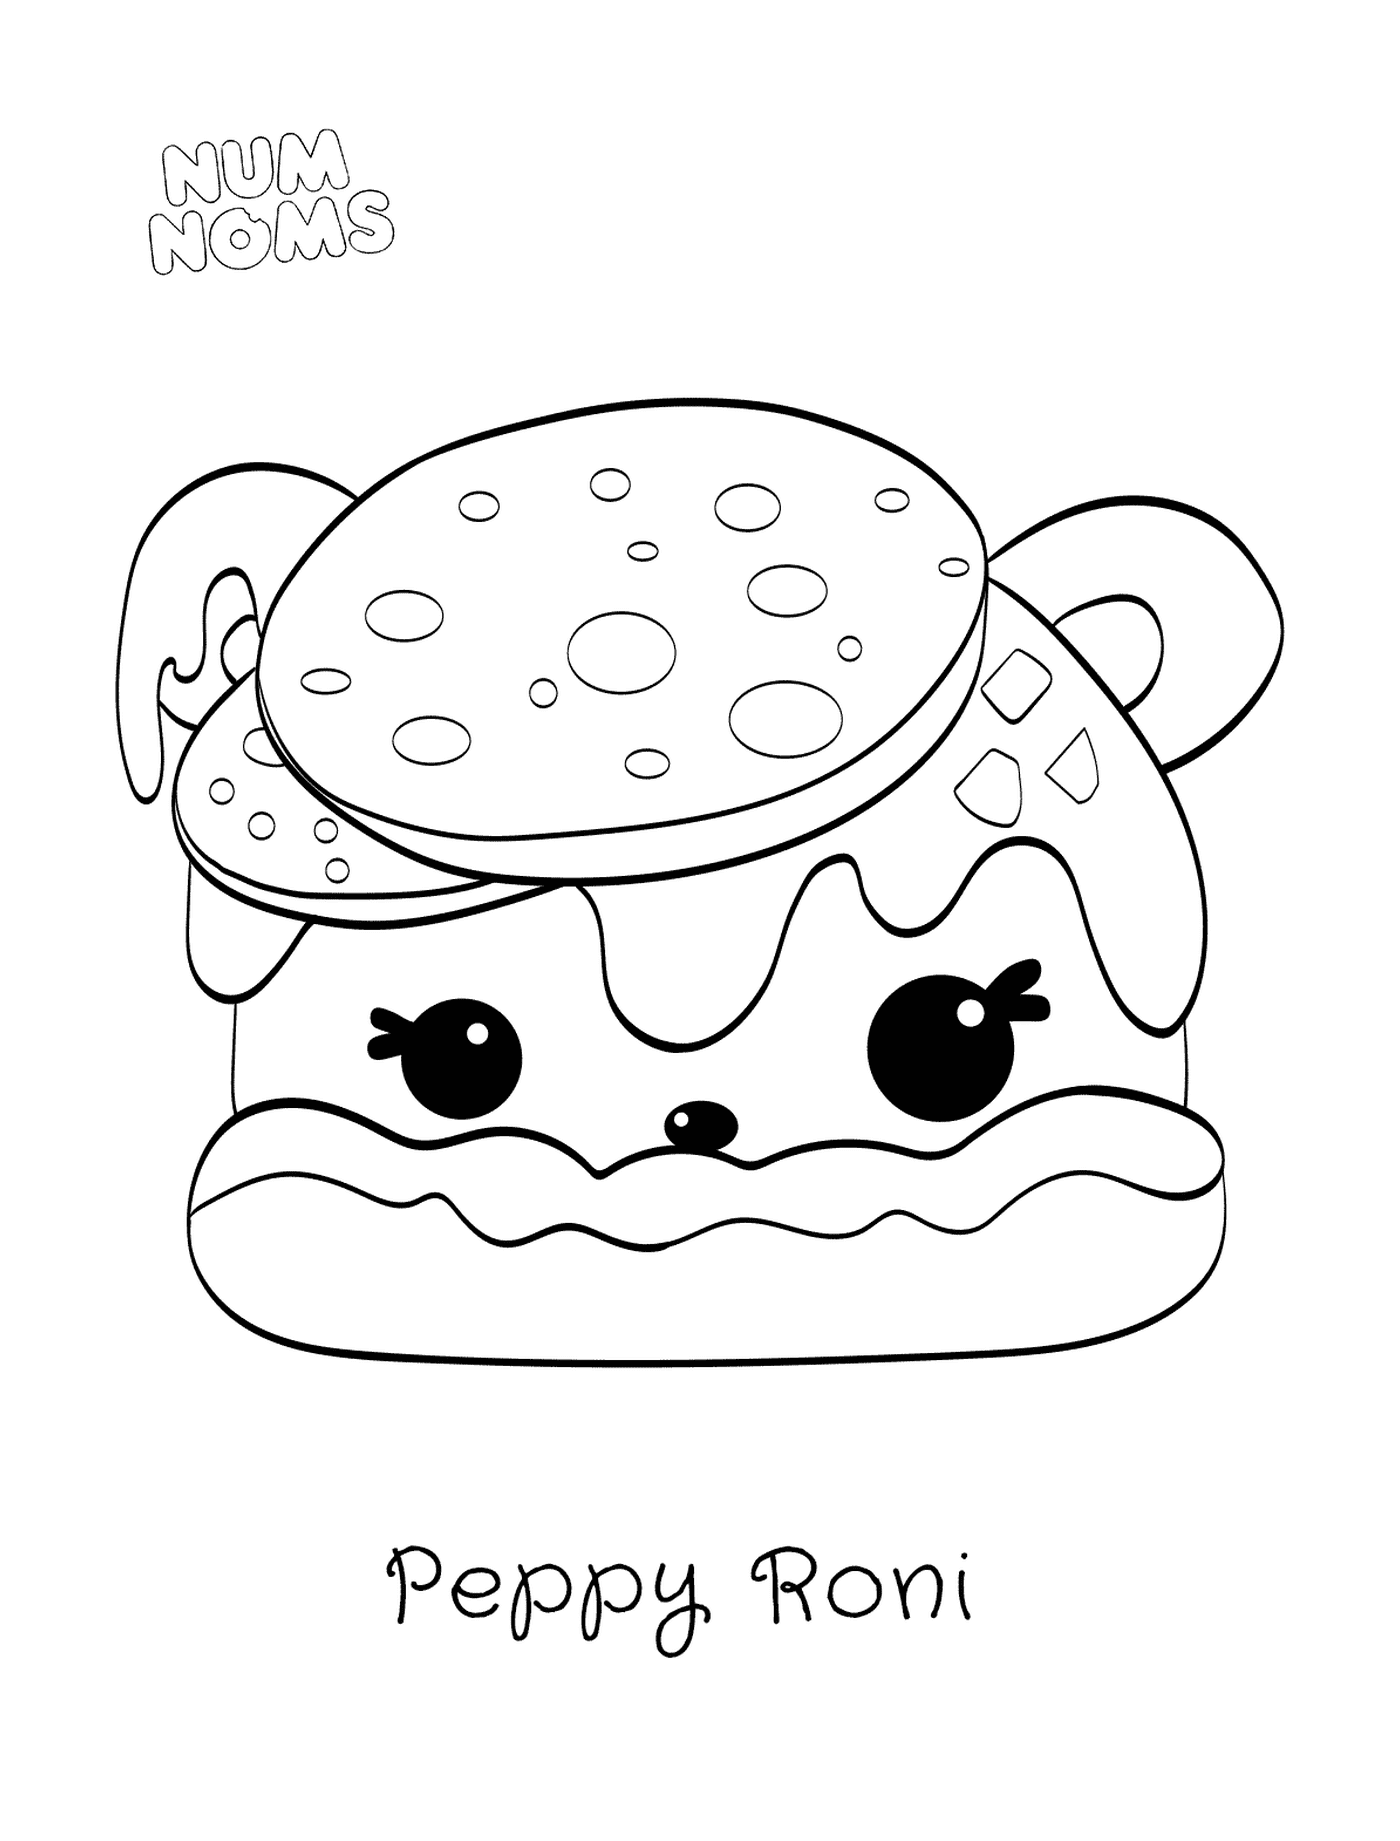  Pizza Peppy Roni von Num Namen 